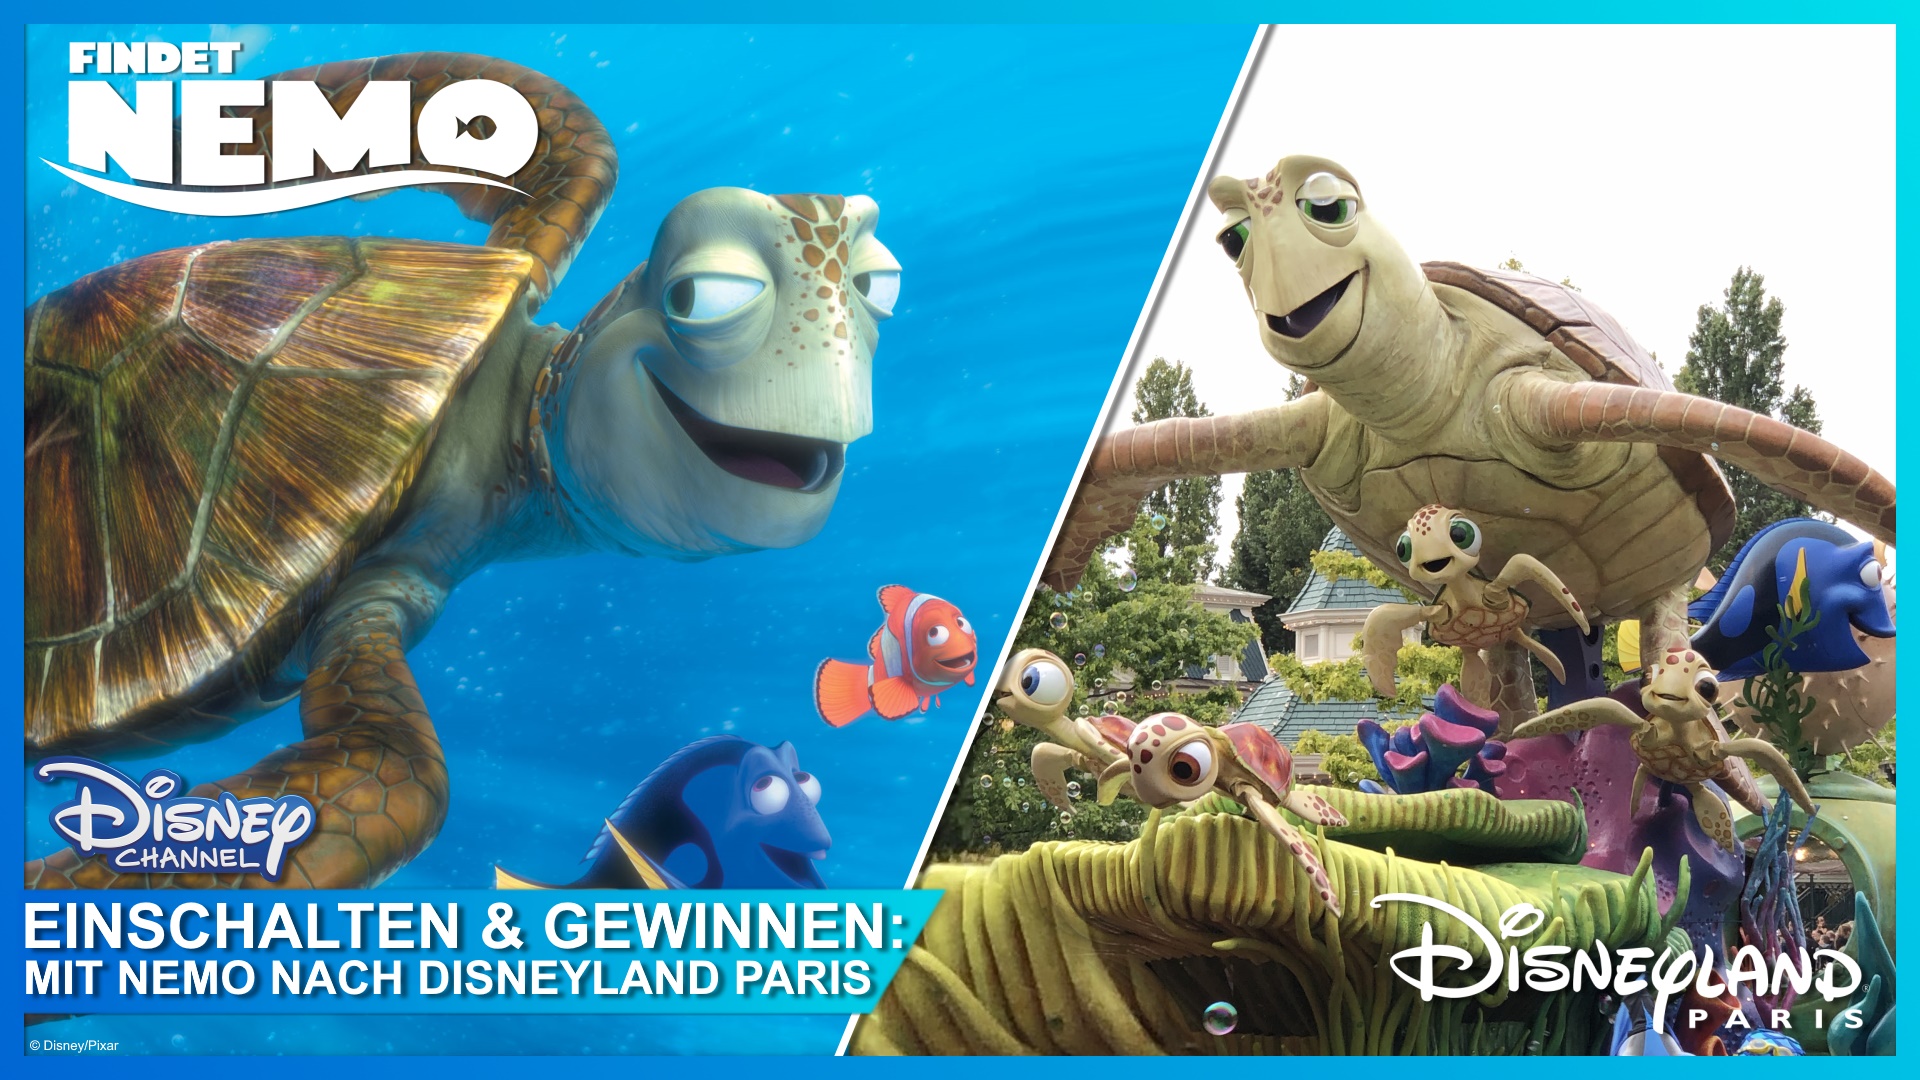 Gewinnspiel-Tipp: „Findet Nemo“ am Freitag um 20:15 im Disney Channel  ansehen und Abenteuerreise nach Disneyland Paris gewinnen! |  DisneyCentral.de – dein Disney Fan Portal